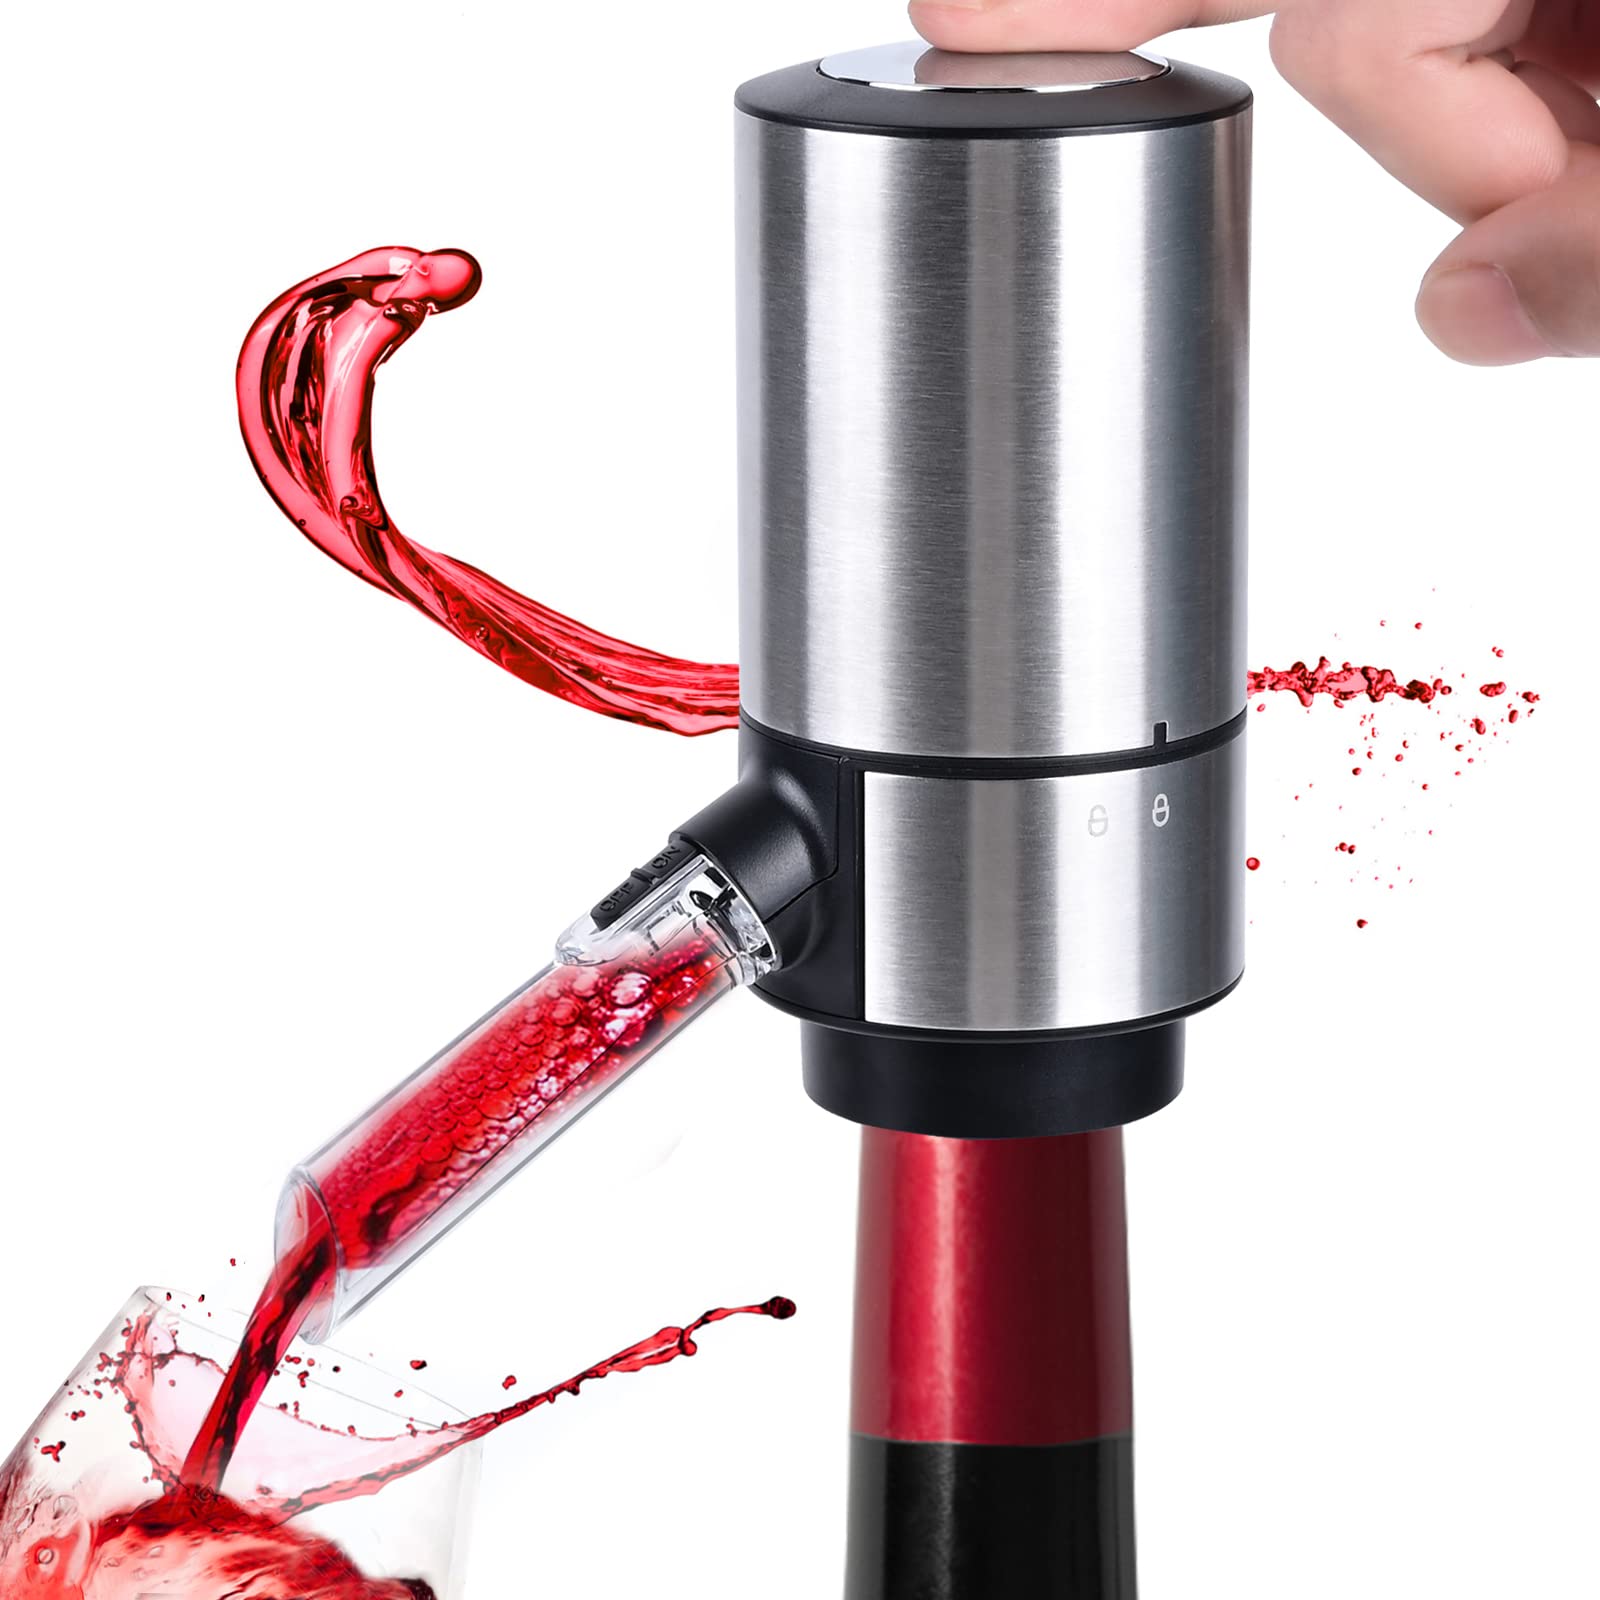 ESCLAP Electric Wine Aerator